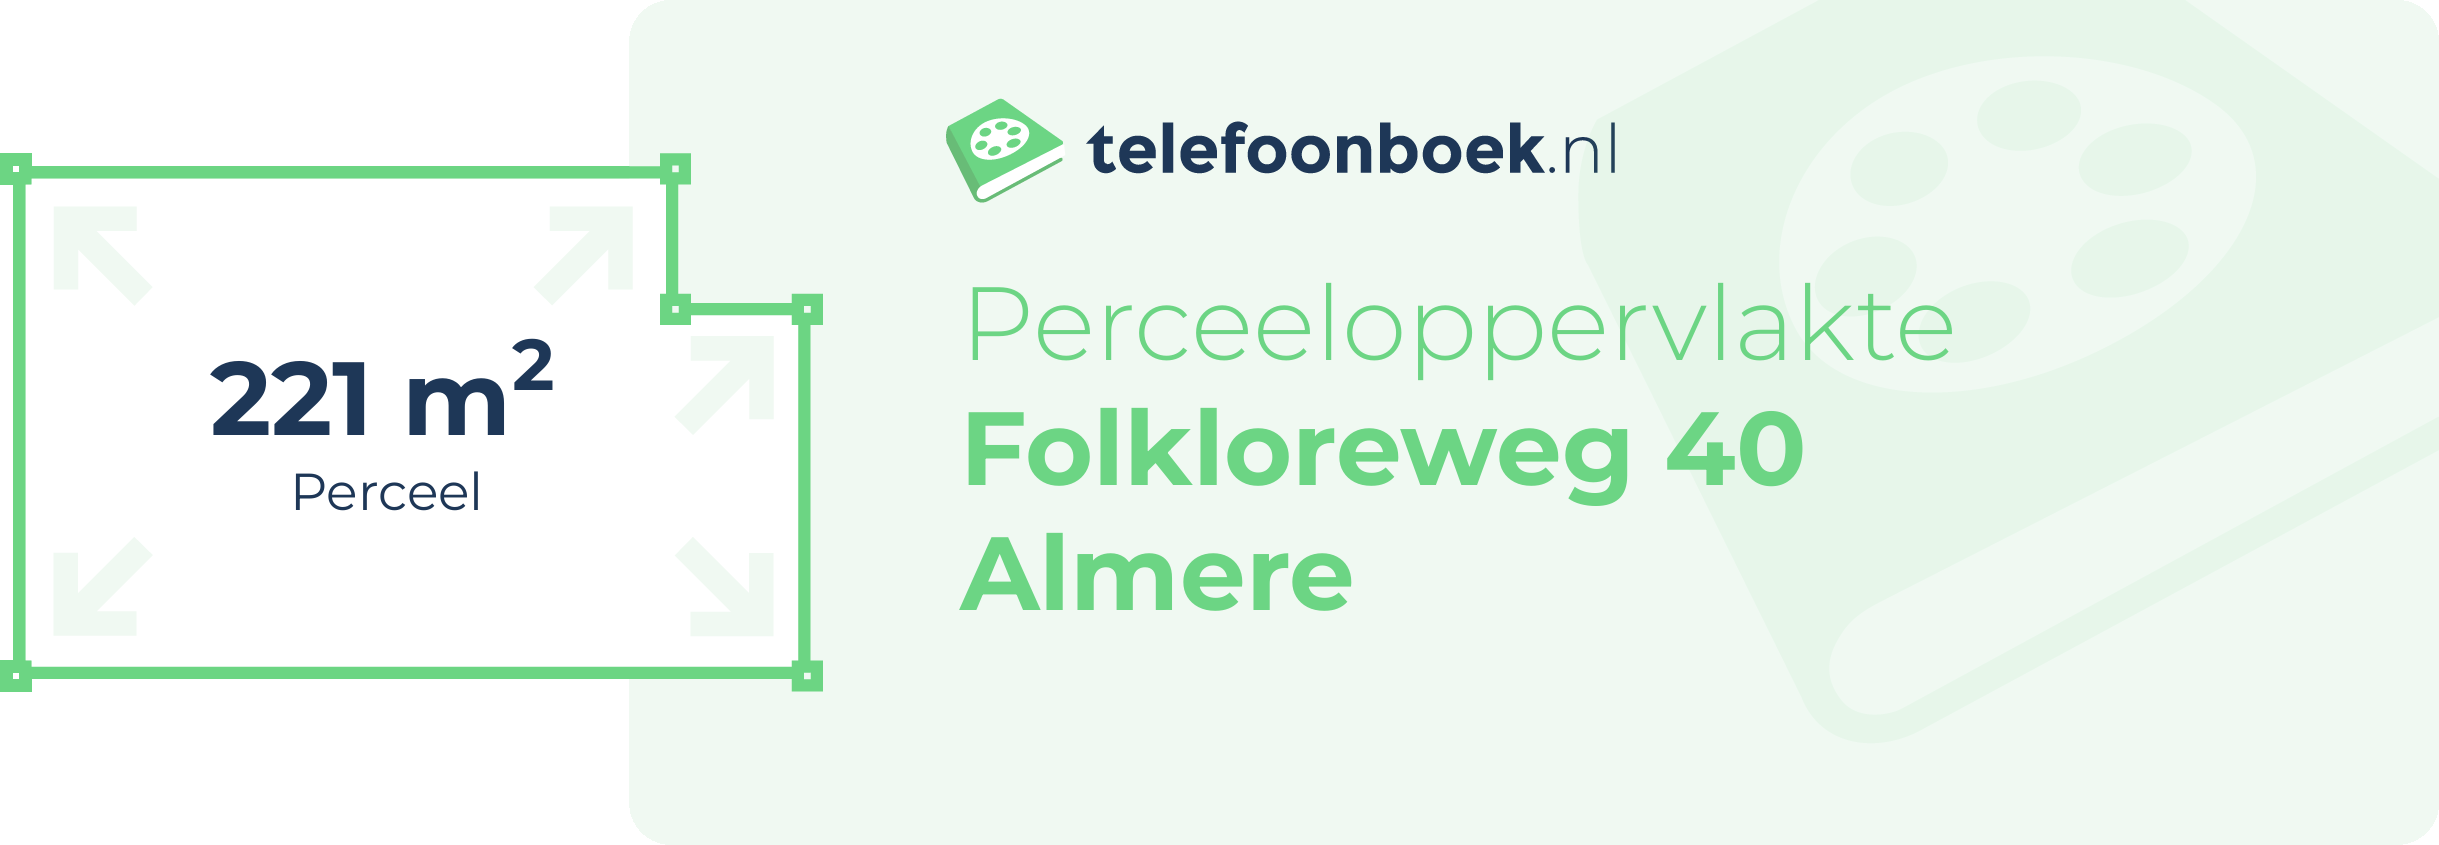 Perceeloppervlakte Folkloreweg 40 Almere